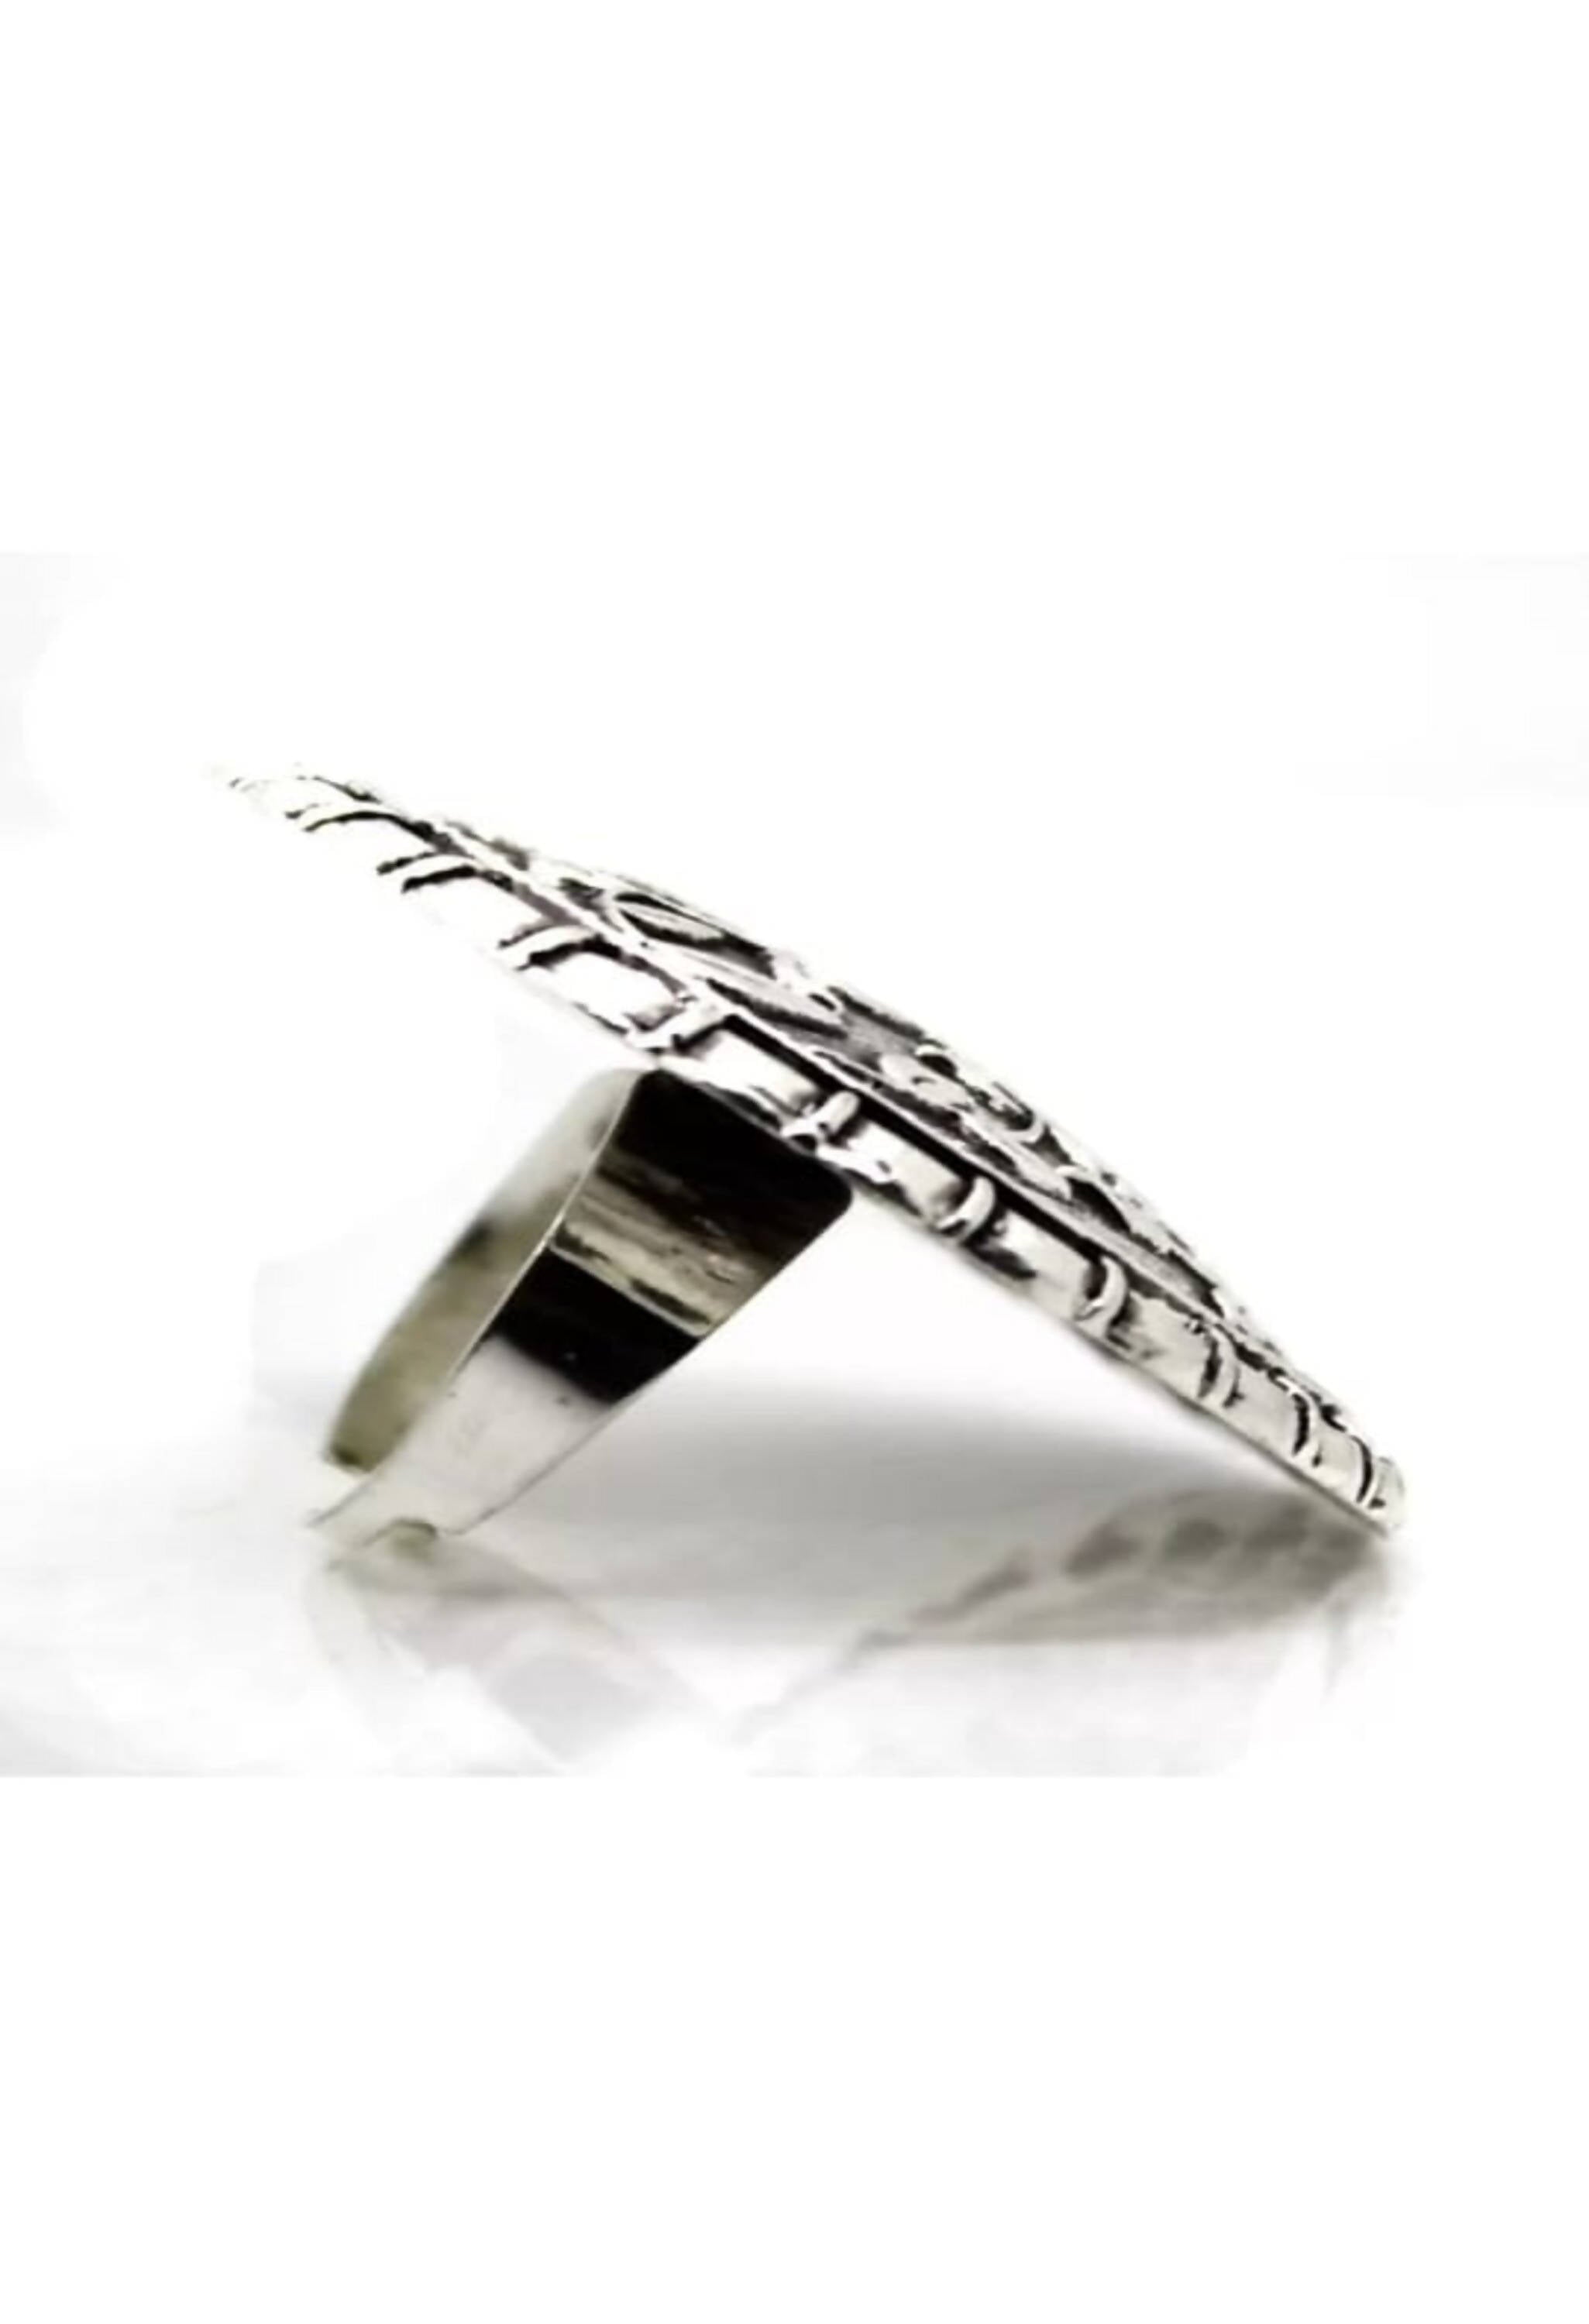 Johar Kamal Oxidised Silver Toned Textured Adjustable Ring Jkring_016